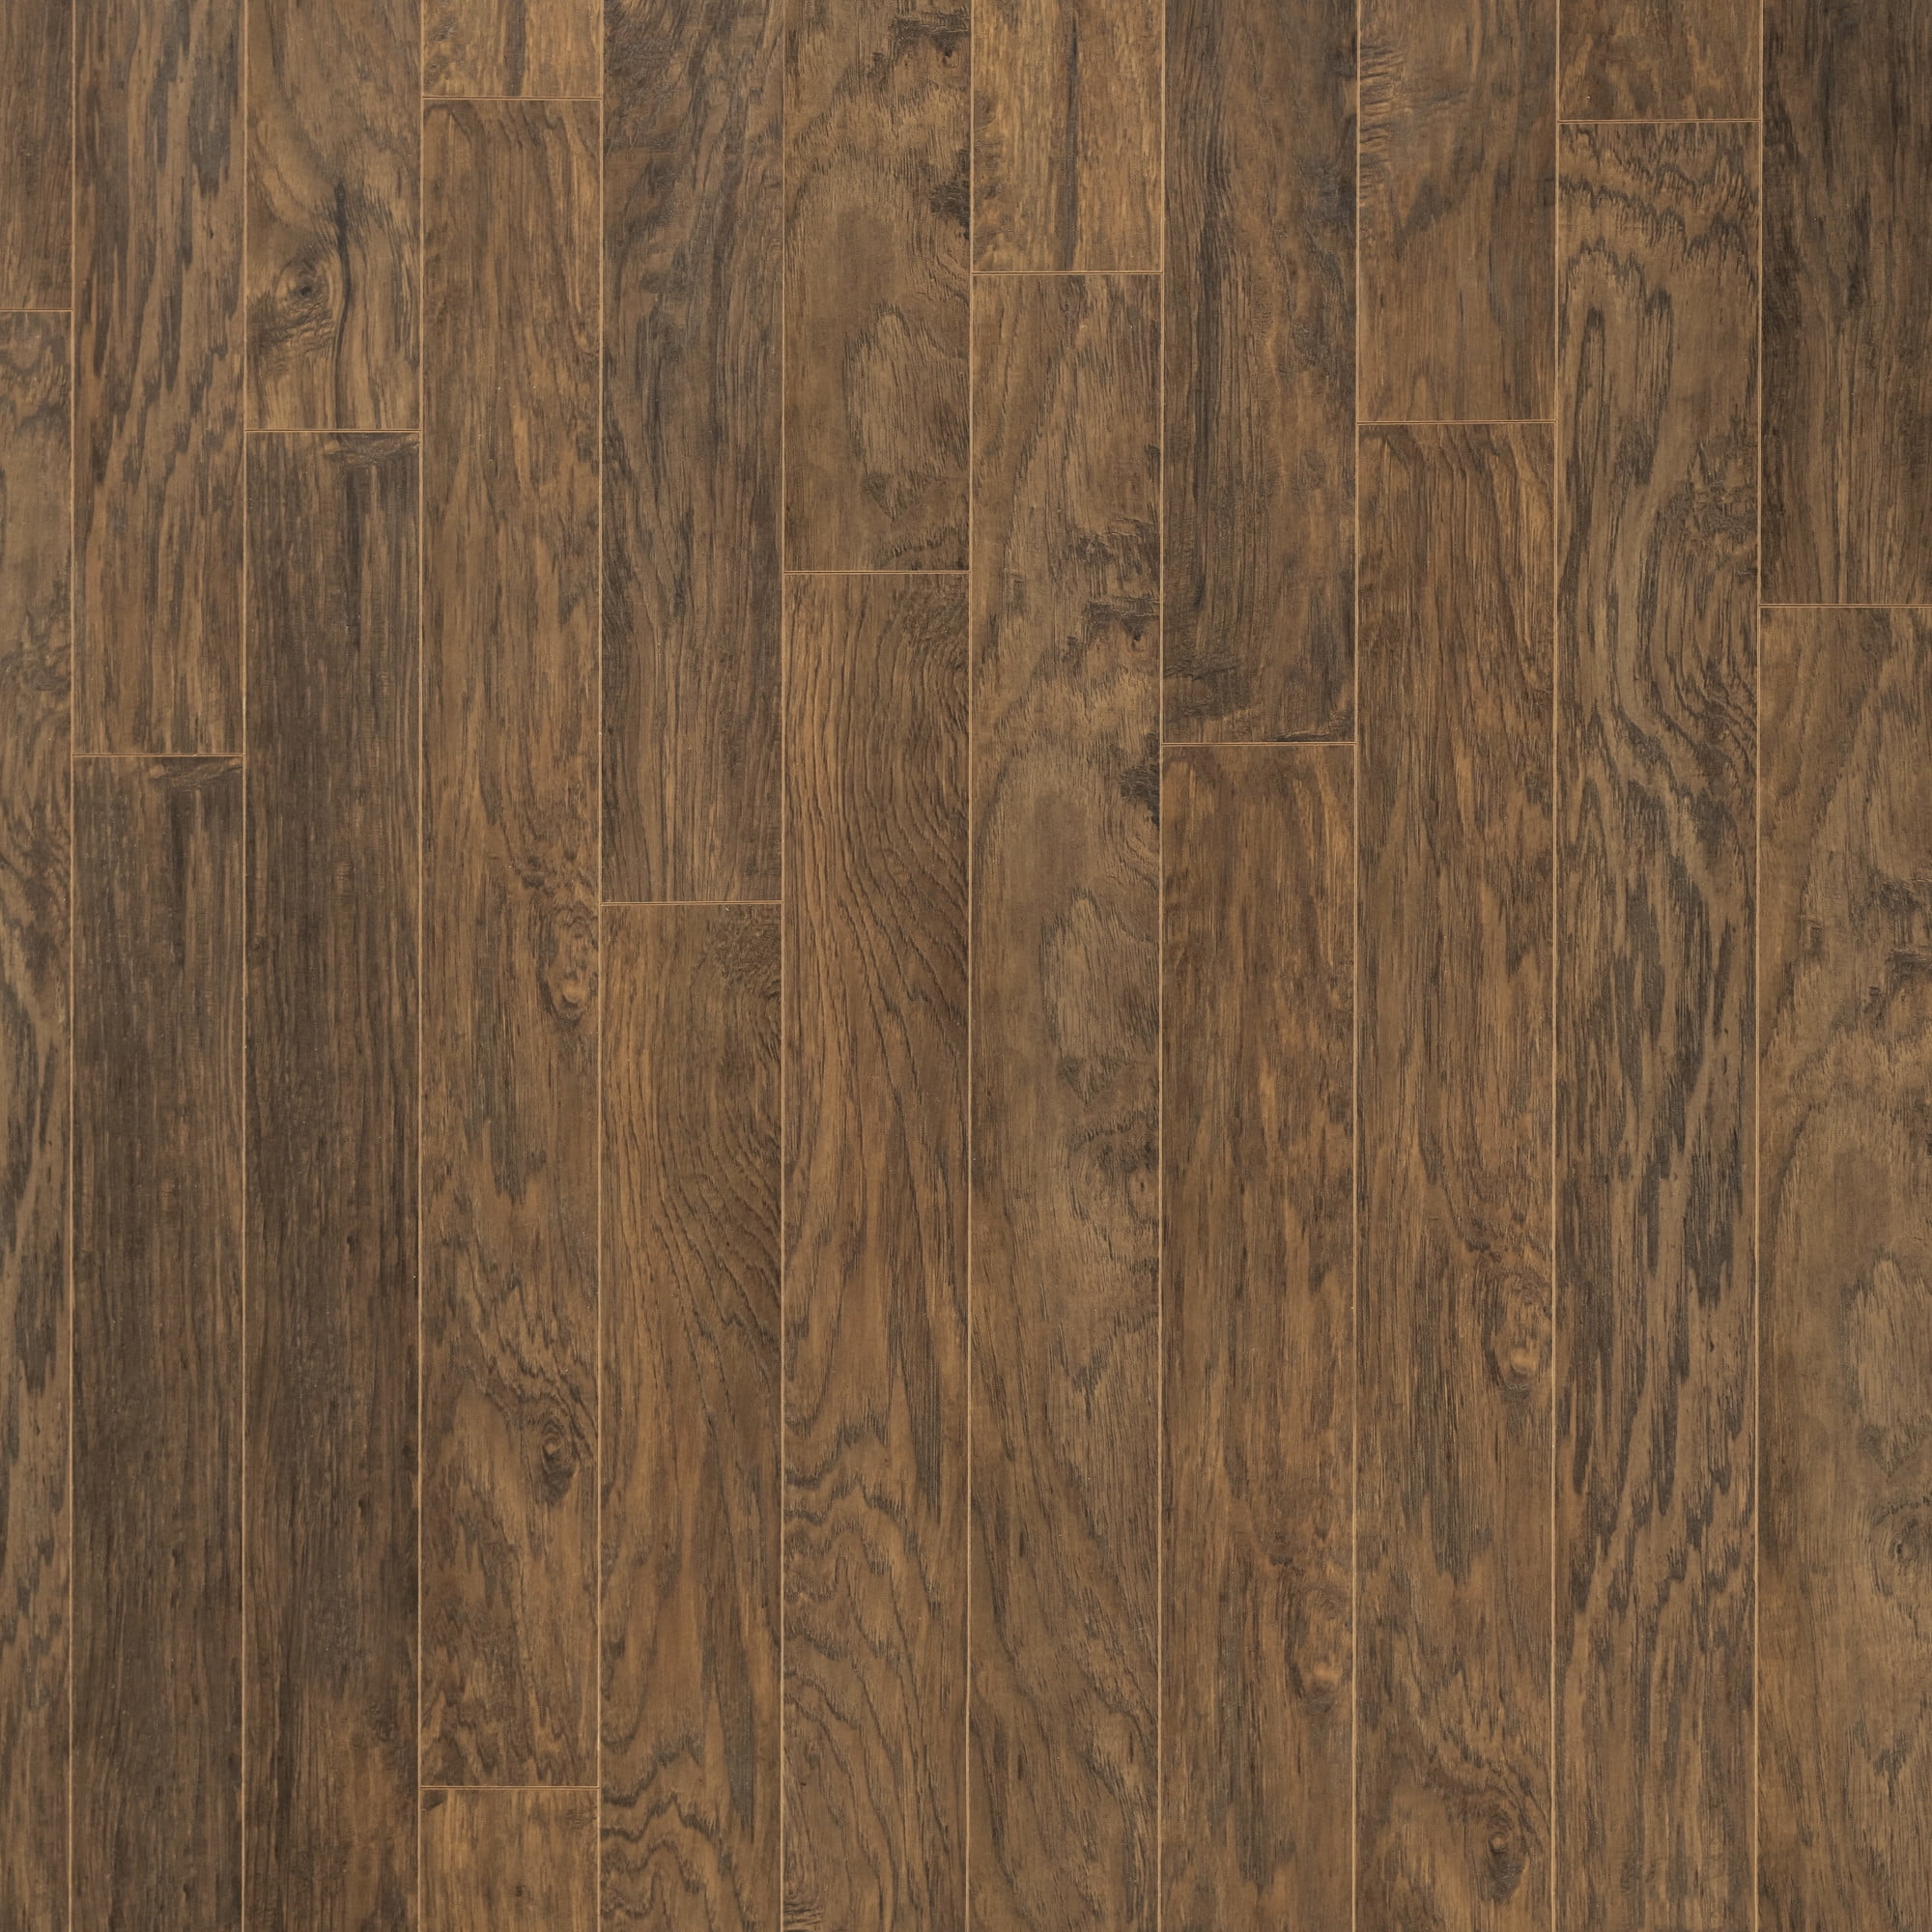 Pergo Lpe09 Lf025 Classics 5 1 4 Wide, Embossed Laminate Flooring